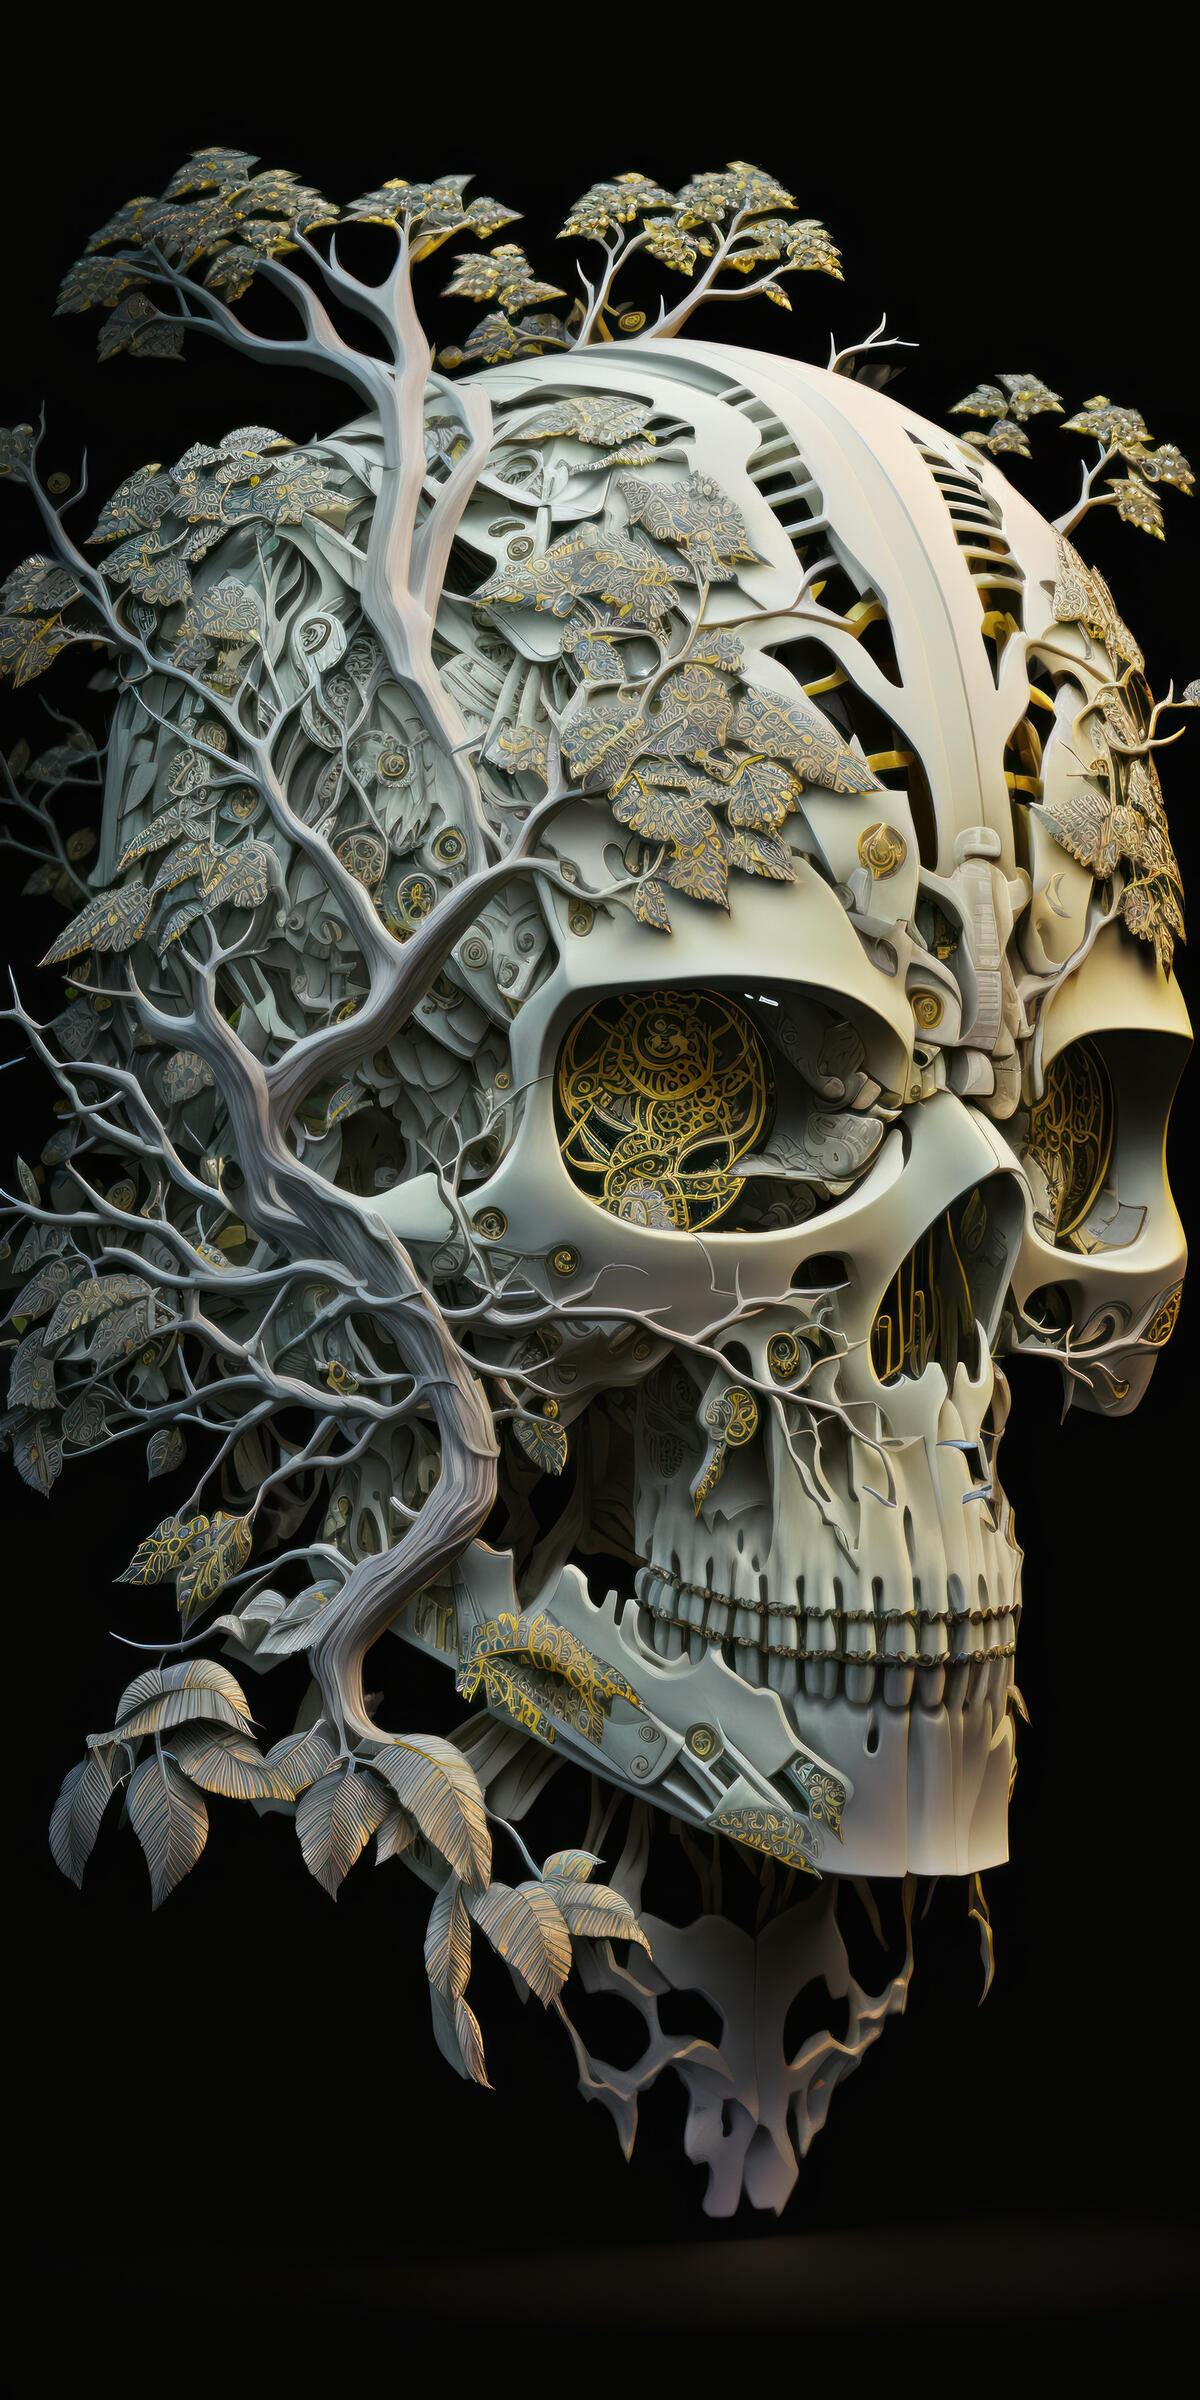 3D design of the skull